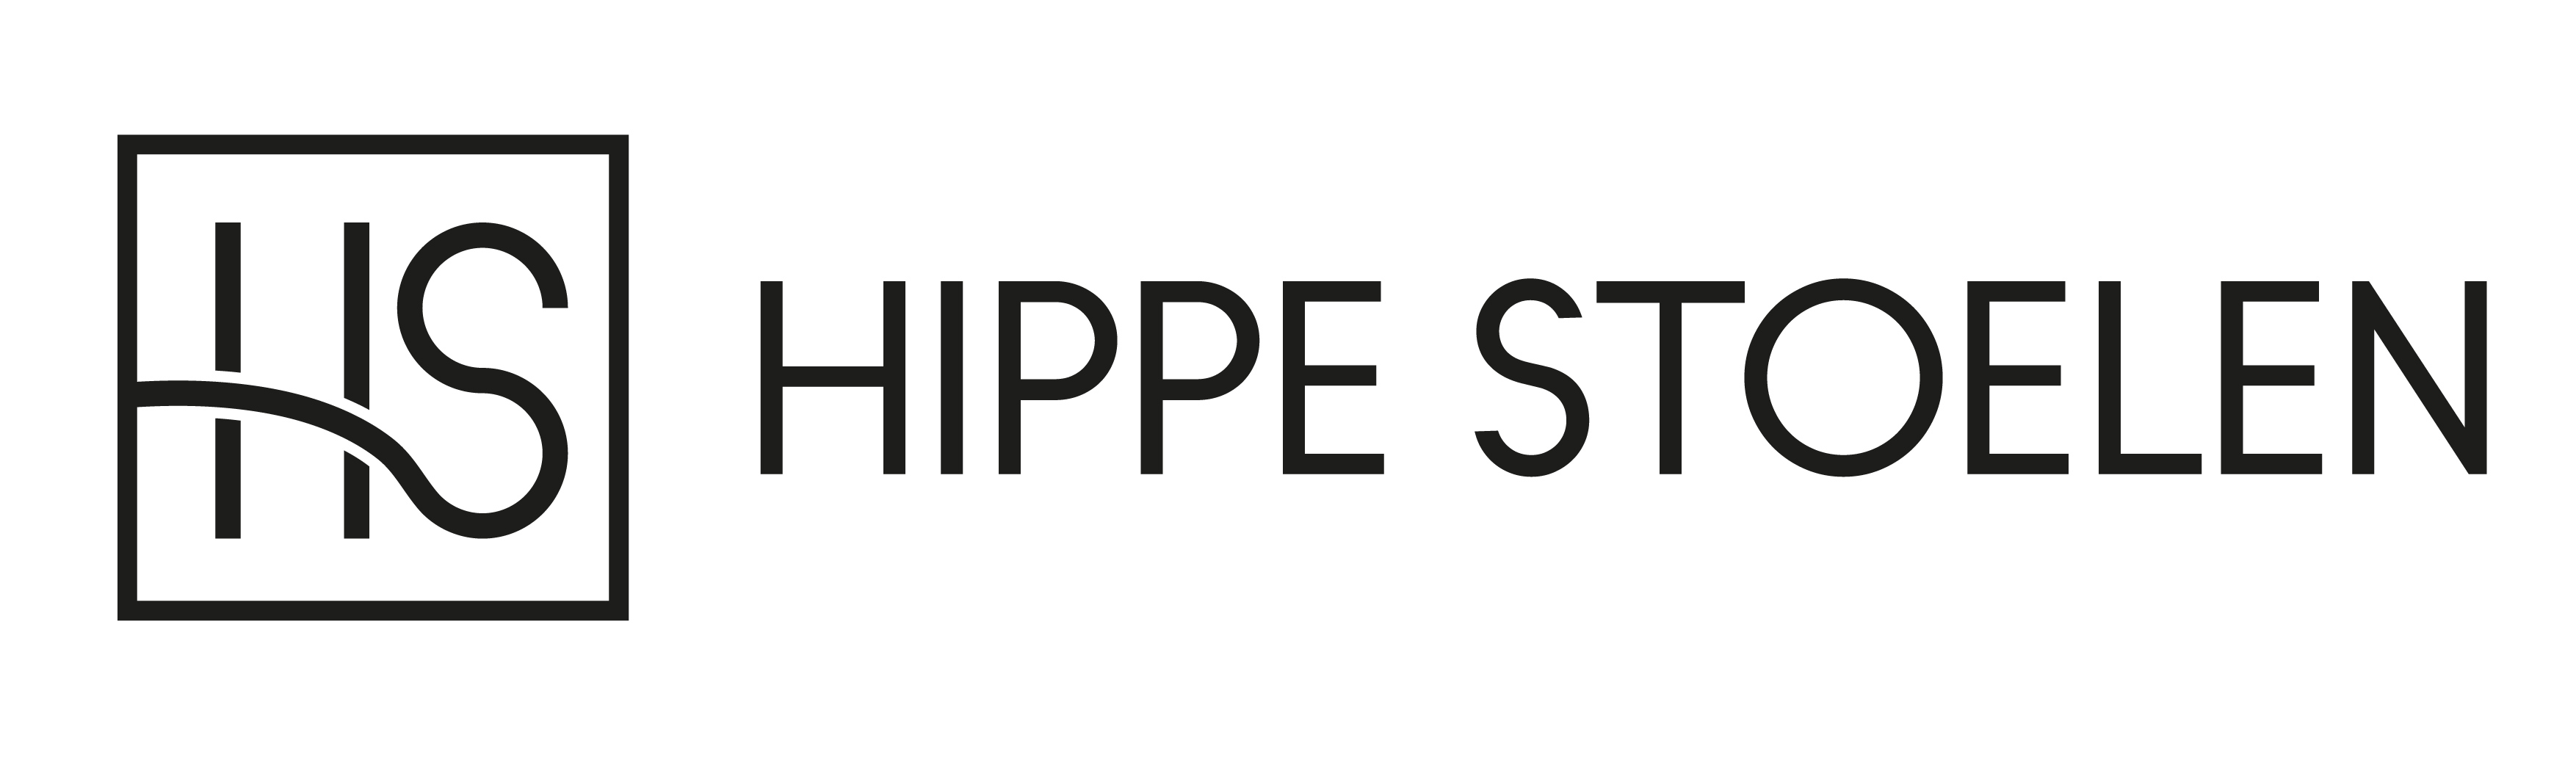 Hippe Stoelen Kortingscode